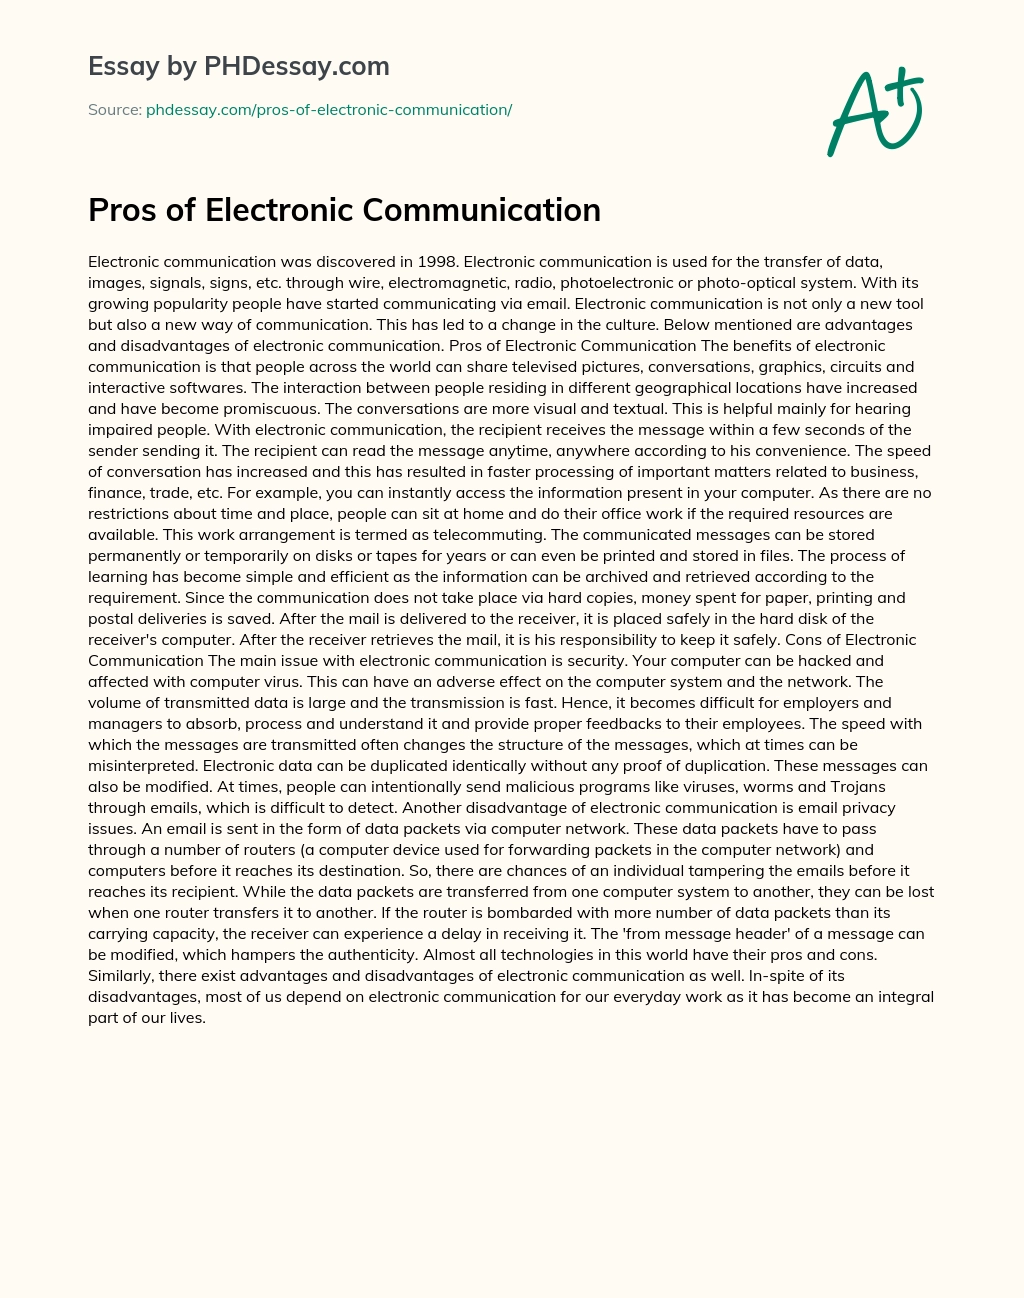 Pros of Electronic Communication essay